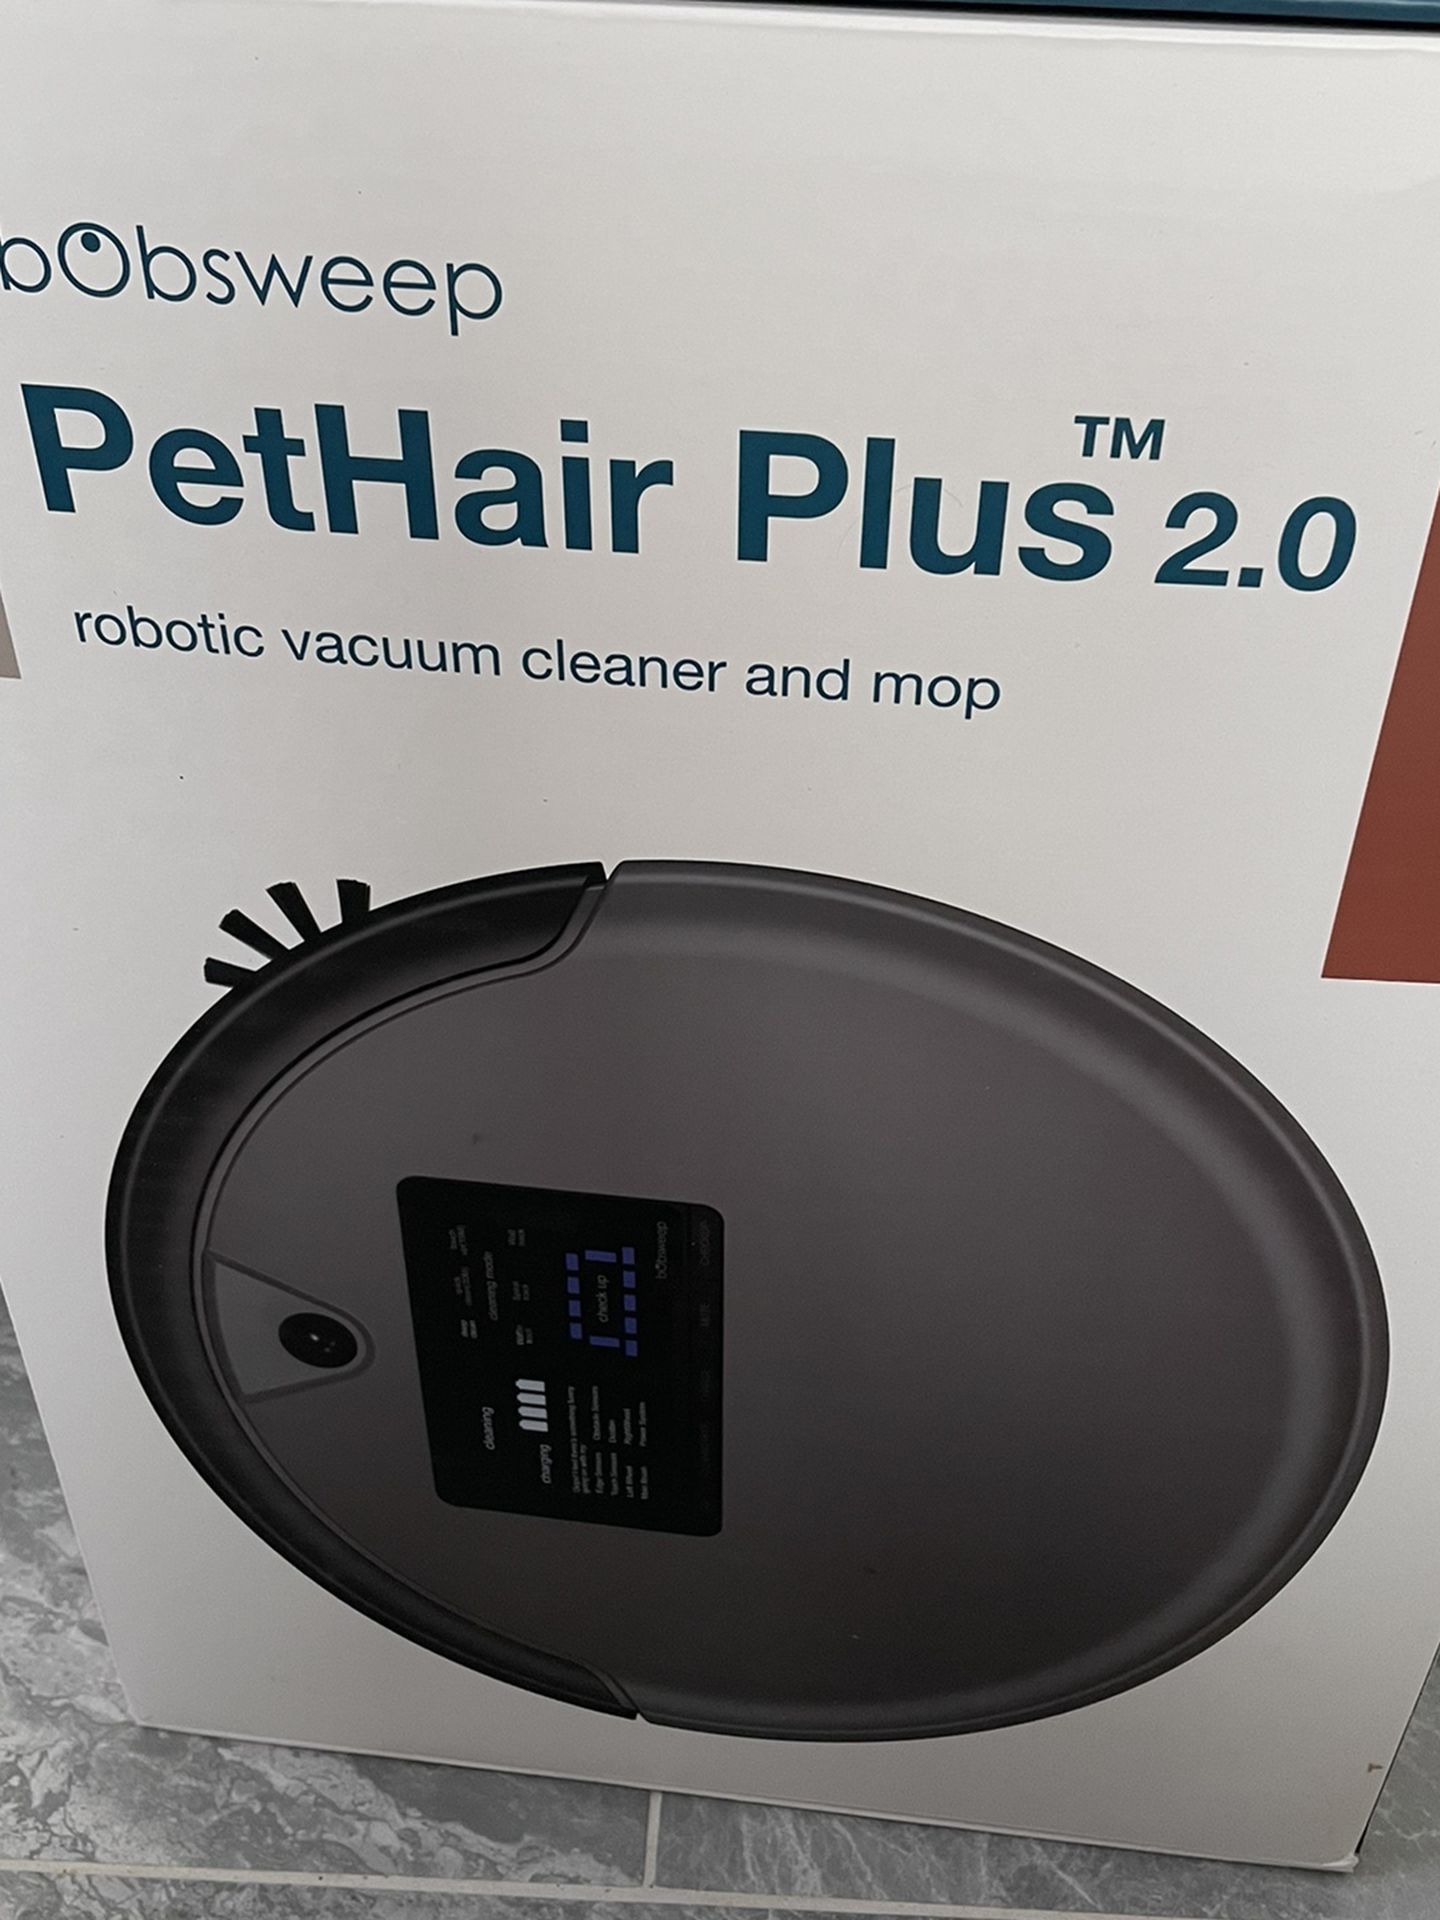 bObsweep Pethair Plus 2.0 Robotic Vacuum